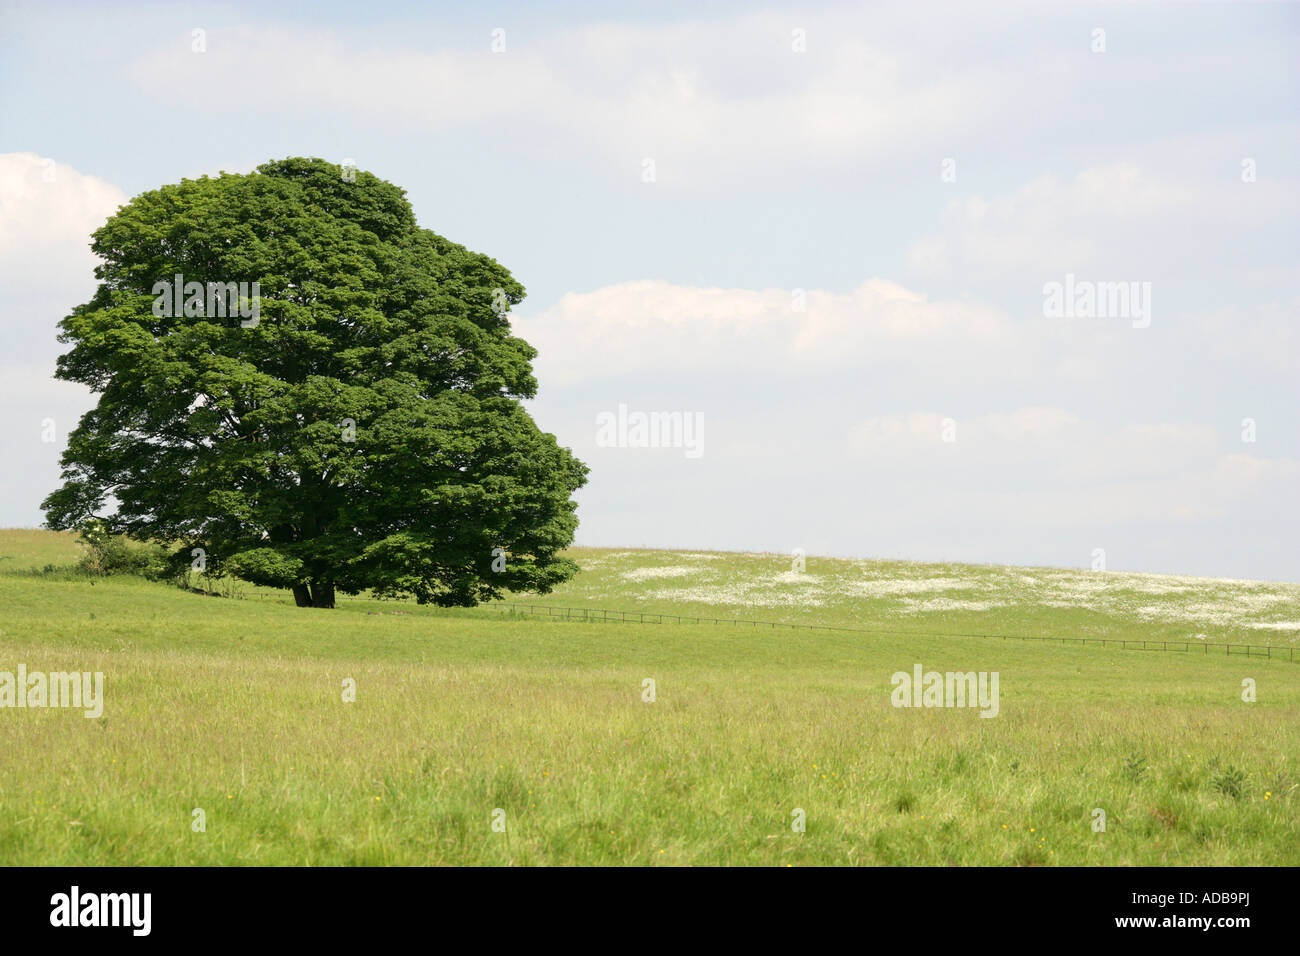 Oak Tree in field of Daisies Oxeye, vallée d'échecs, Hertfordshire. Ou pédonculé Quercus robur, chêne anglais, Fagaceae Banque D'Images